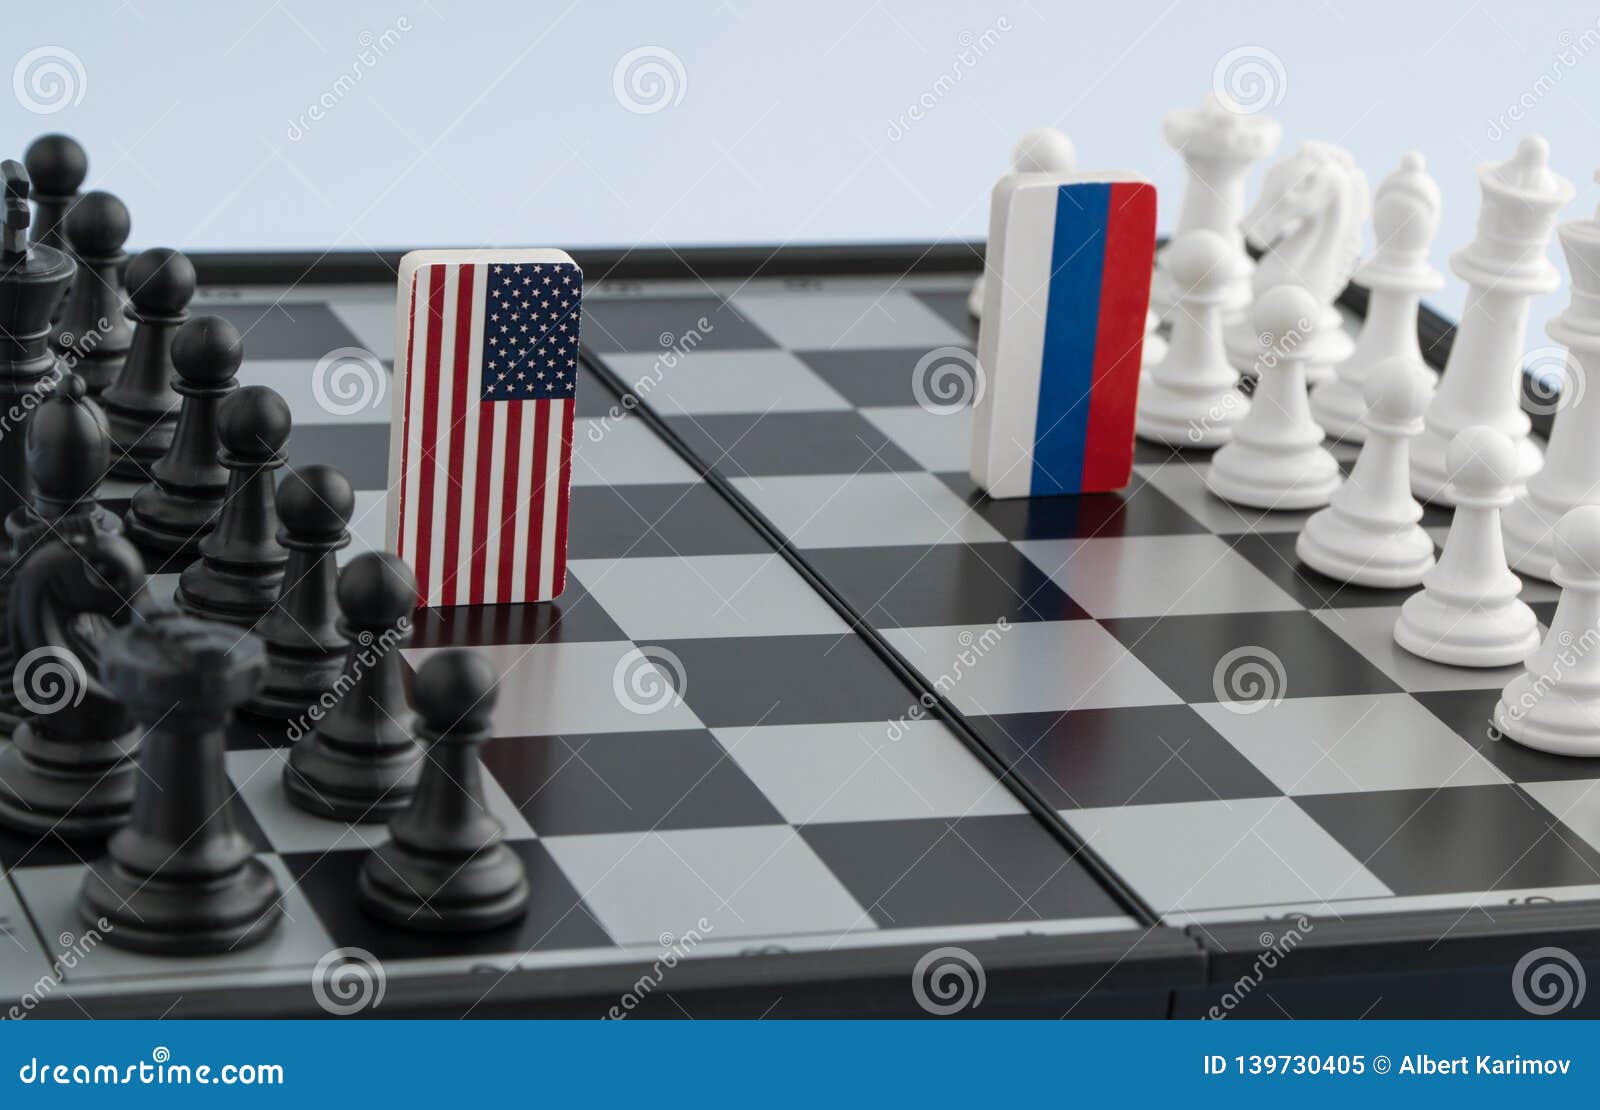 Potências do xadrez: China